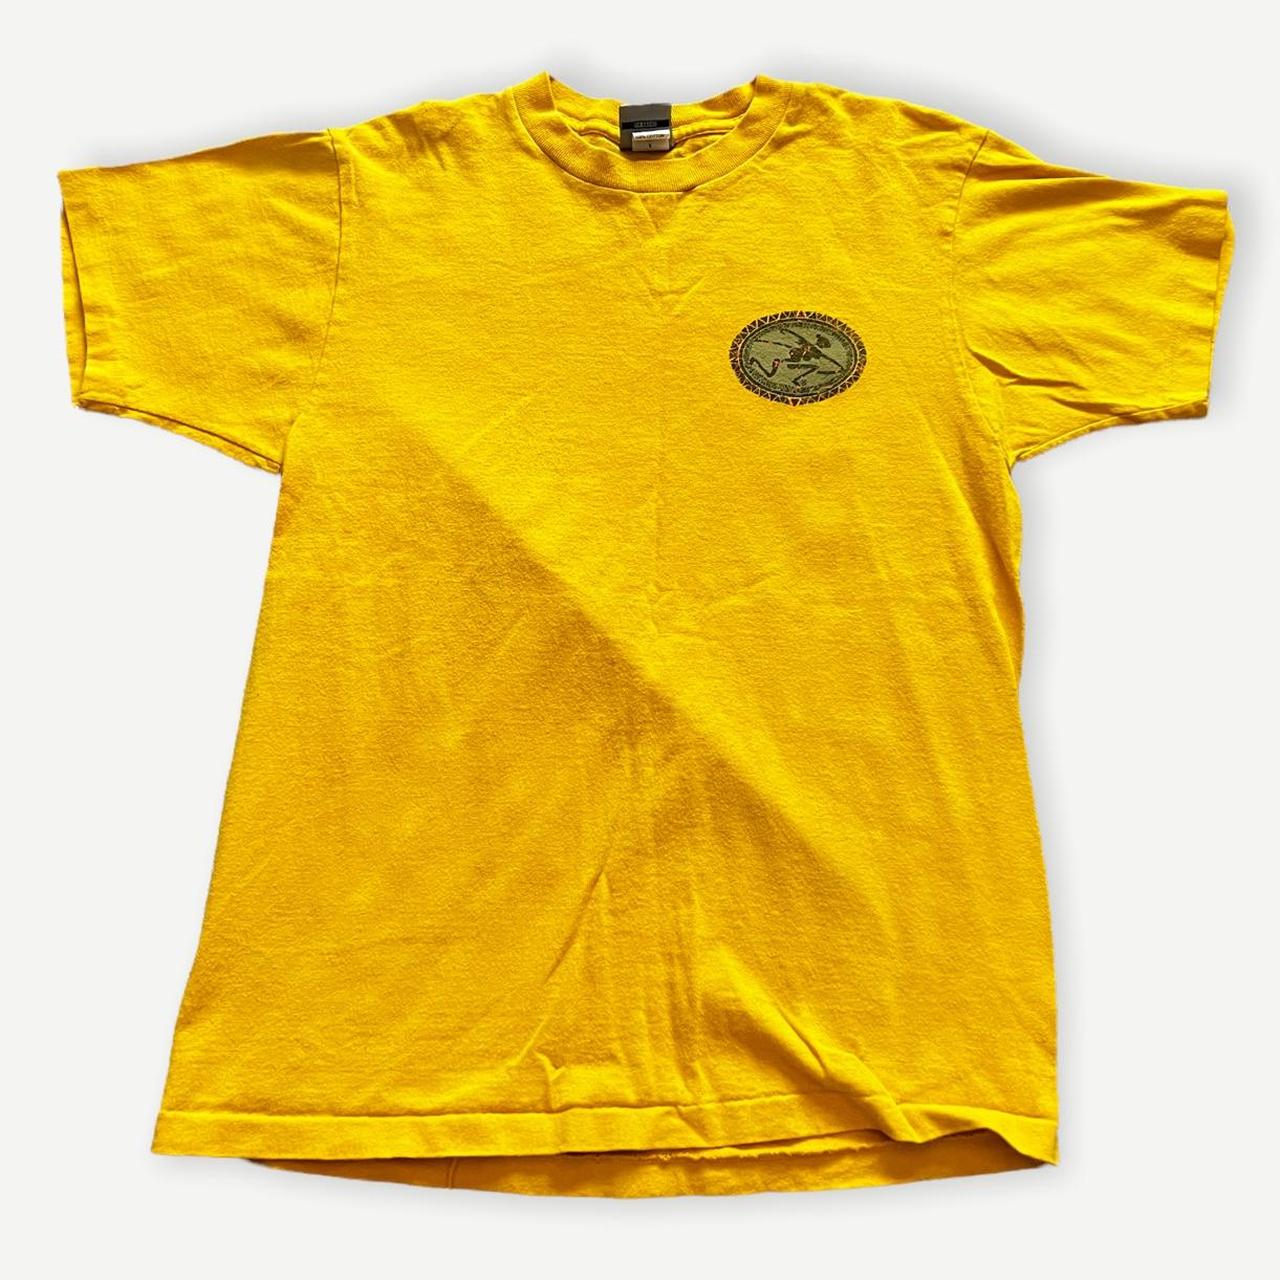 Ocean Pacific Men's Yellow T-shirt (2)